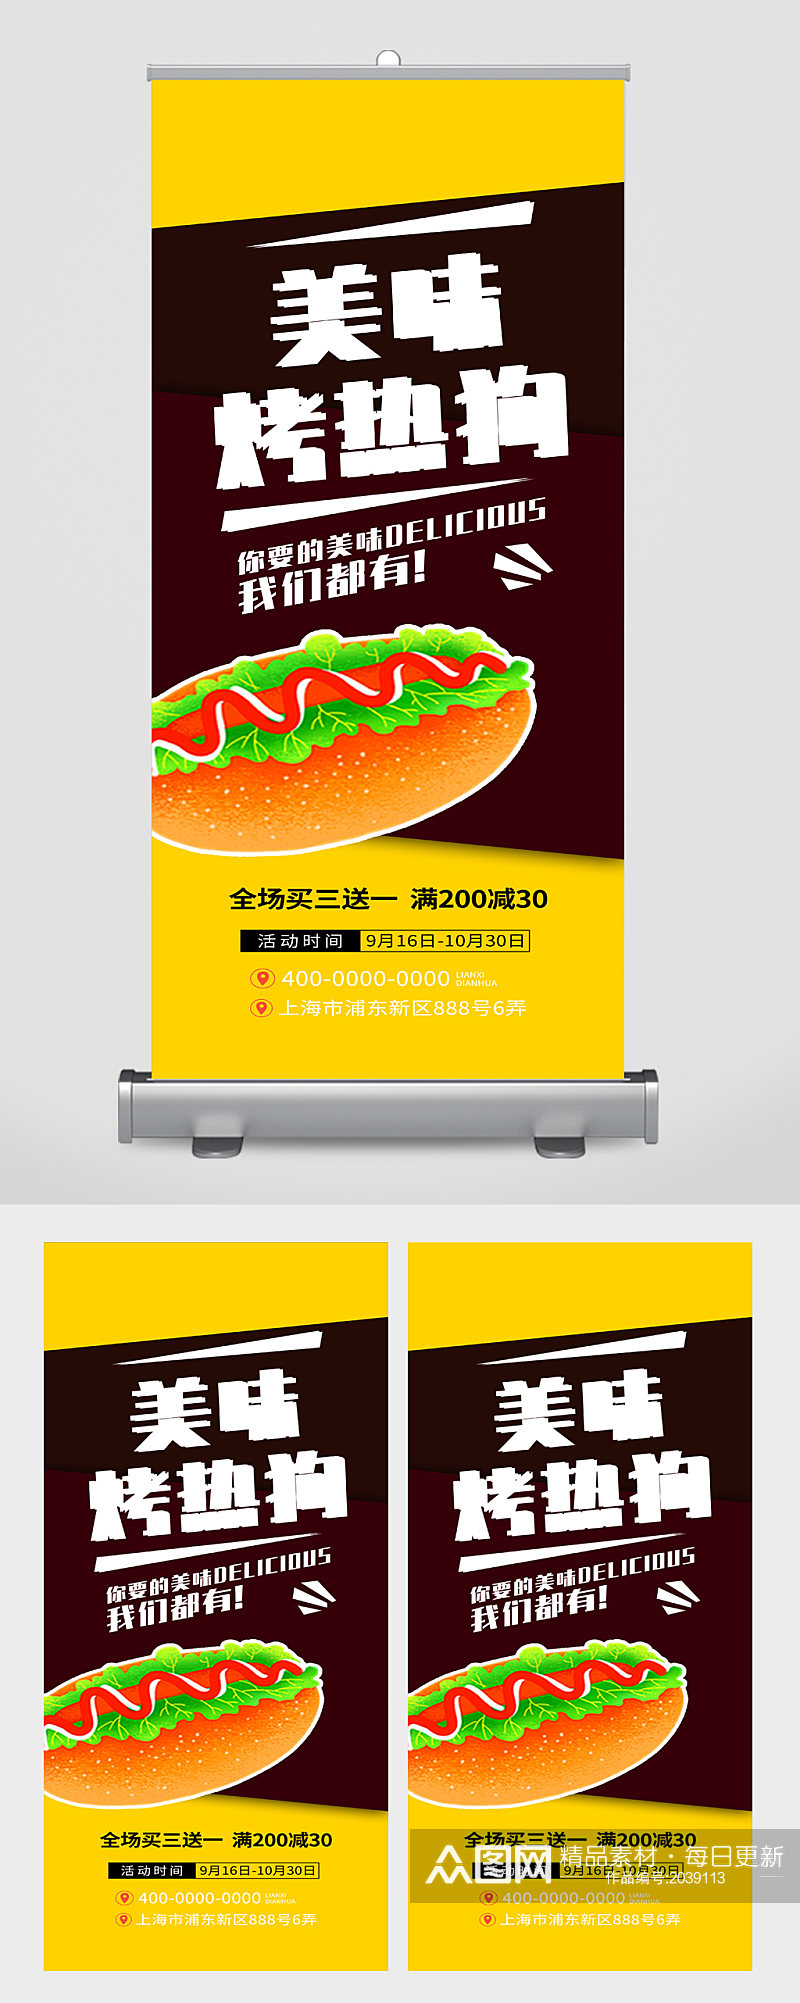 烤热狗美食展架宣传素材